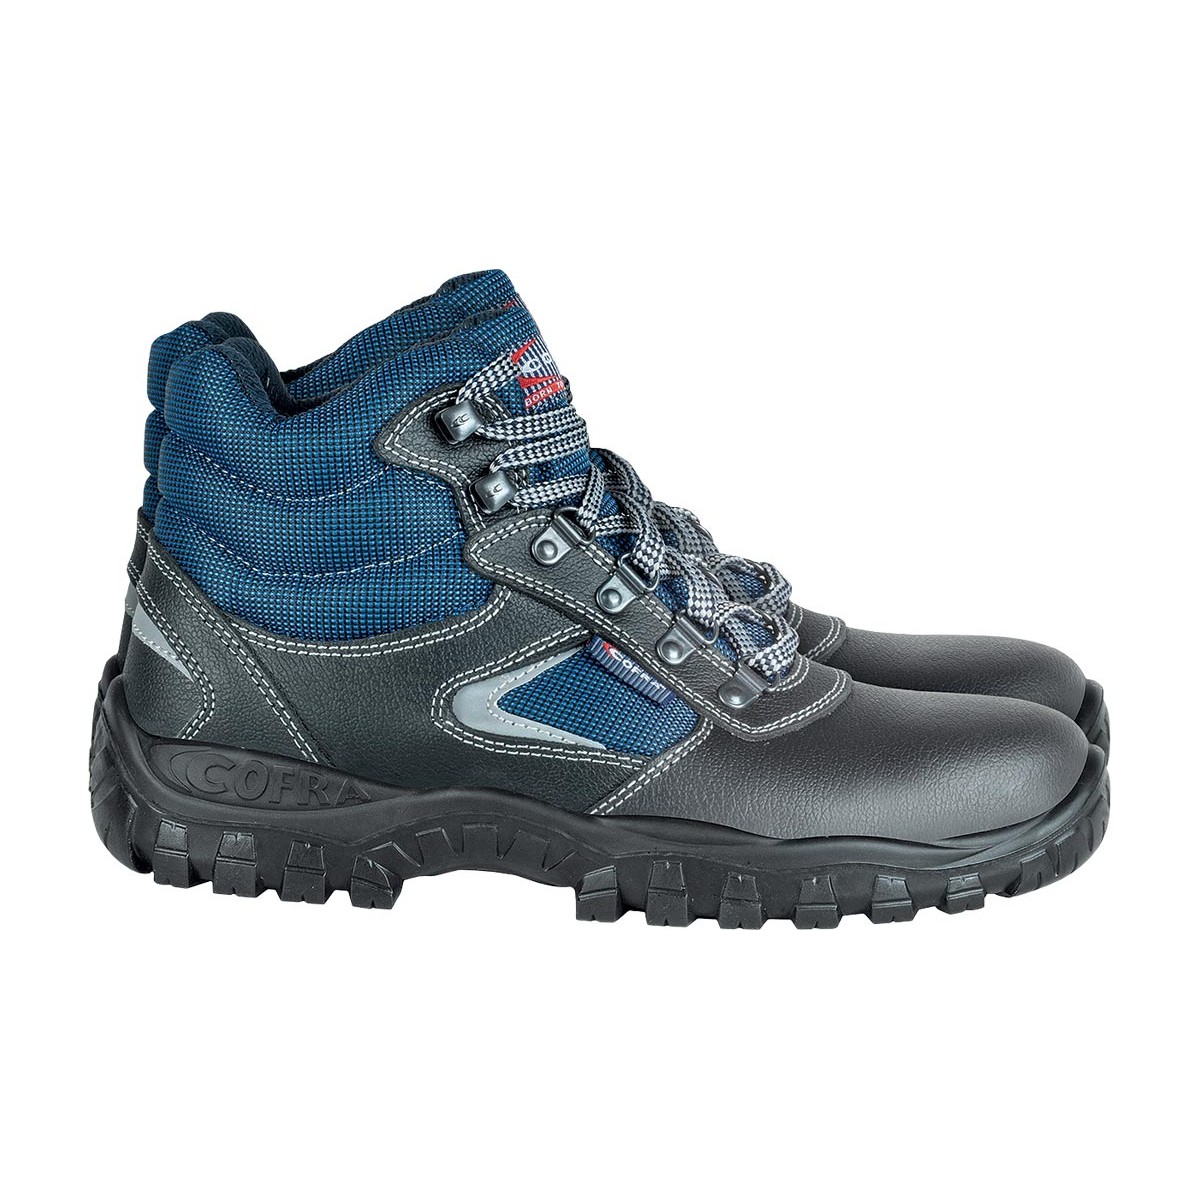 Buty bezpieczne podwyższane COFRA SOHO S3 SRC r. 36 - 48